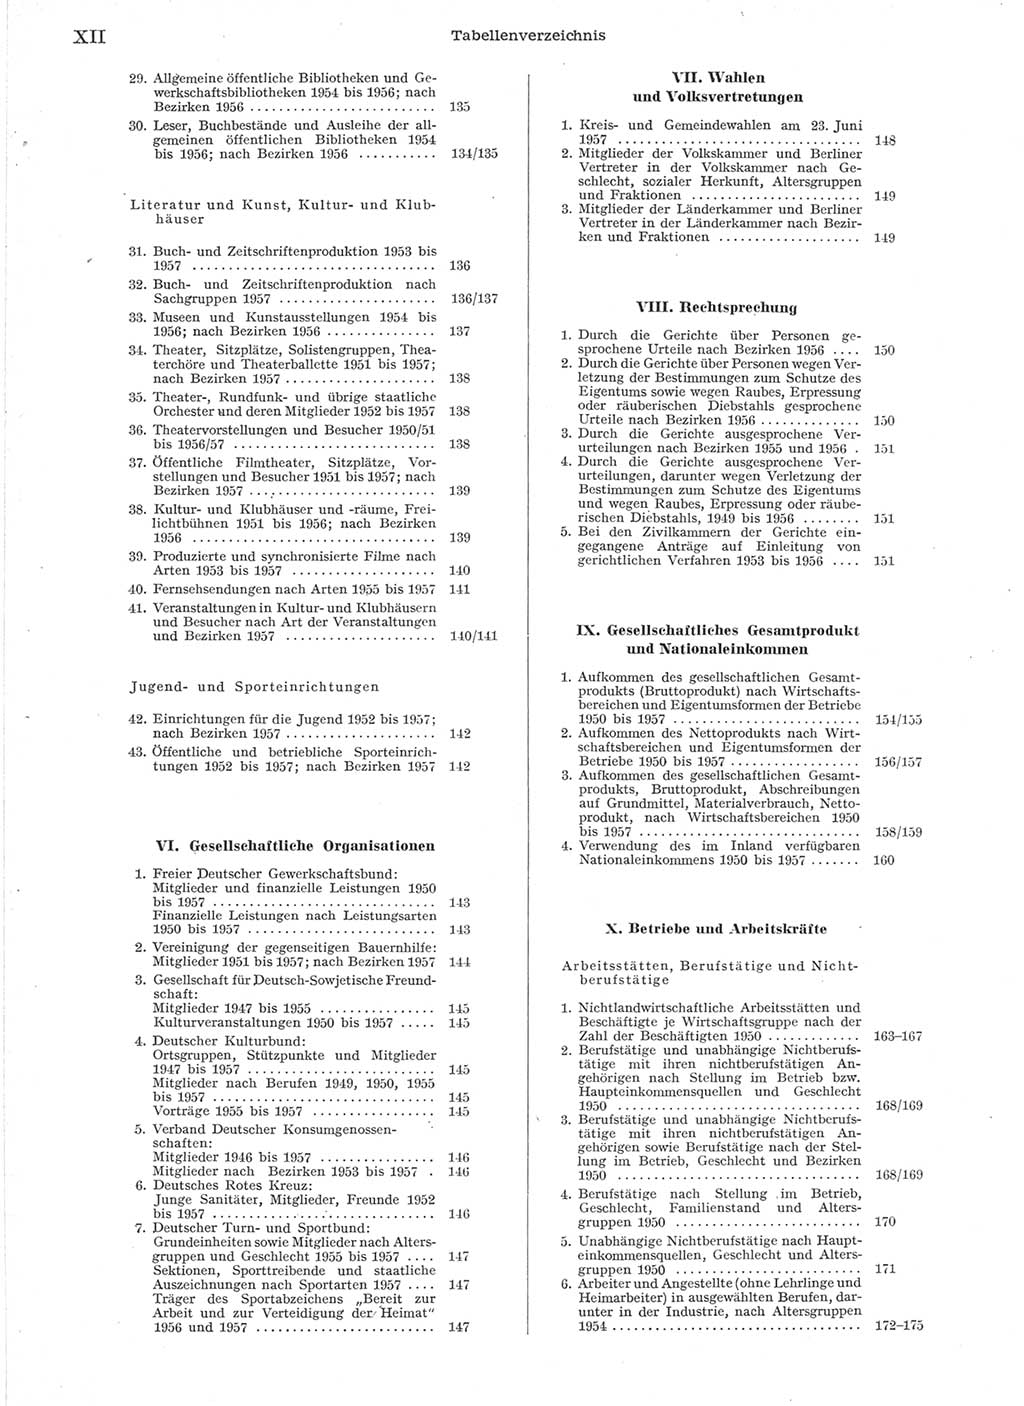 Statistisches Jahrbuch der Deutschen Demokratischen Republik (DDR) 1957, Seite 12 (Stat. Jb. DDR 1957, S. 12)